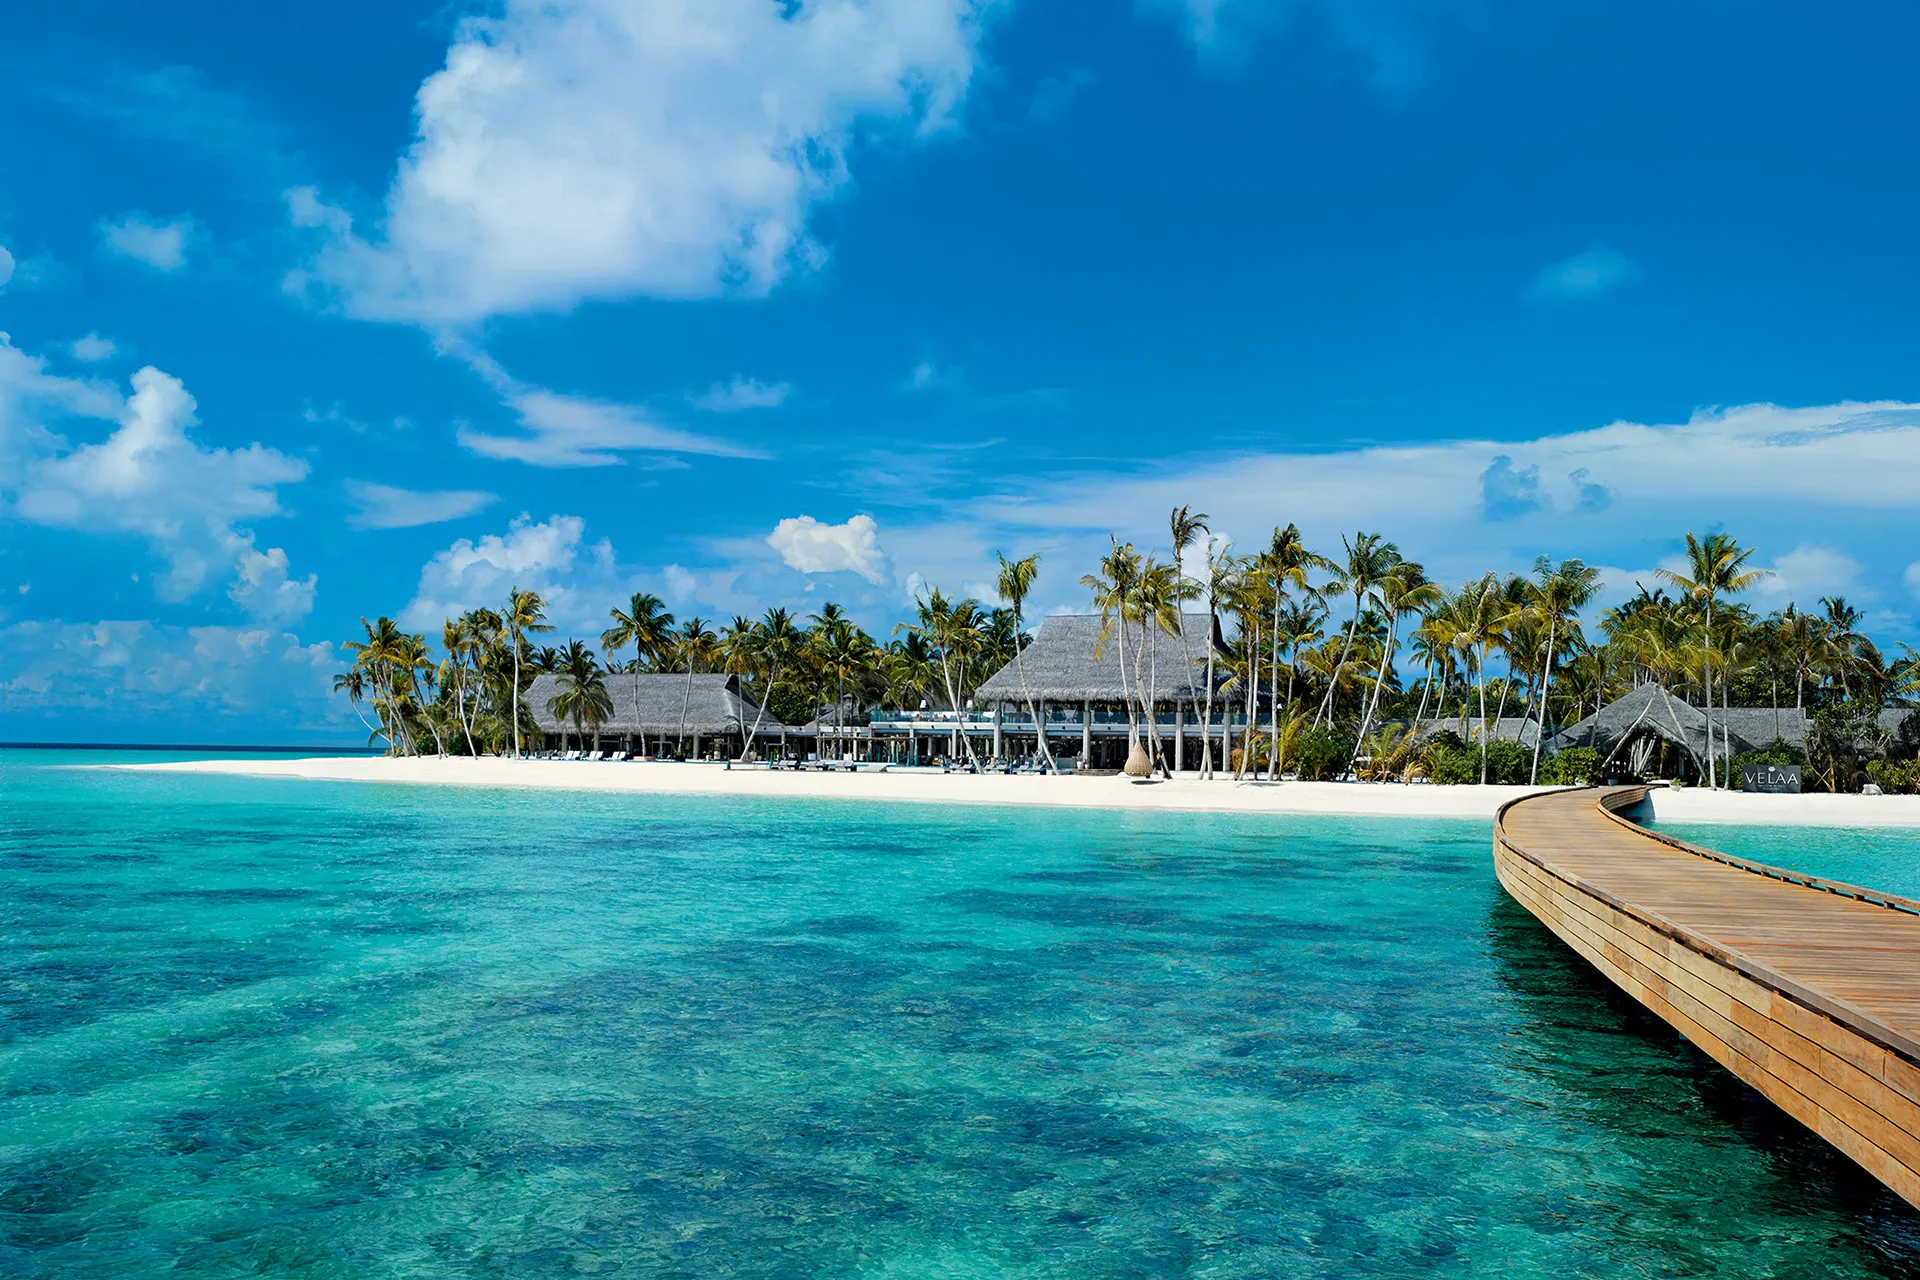 Maledivische Insel mit Palmen und Häusern